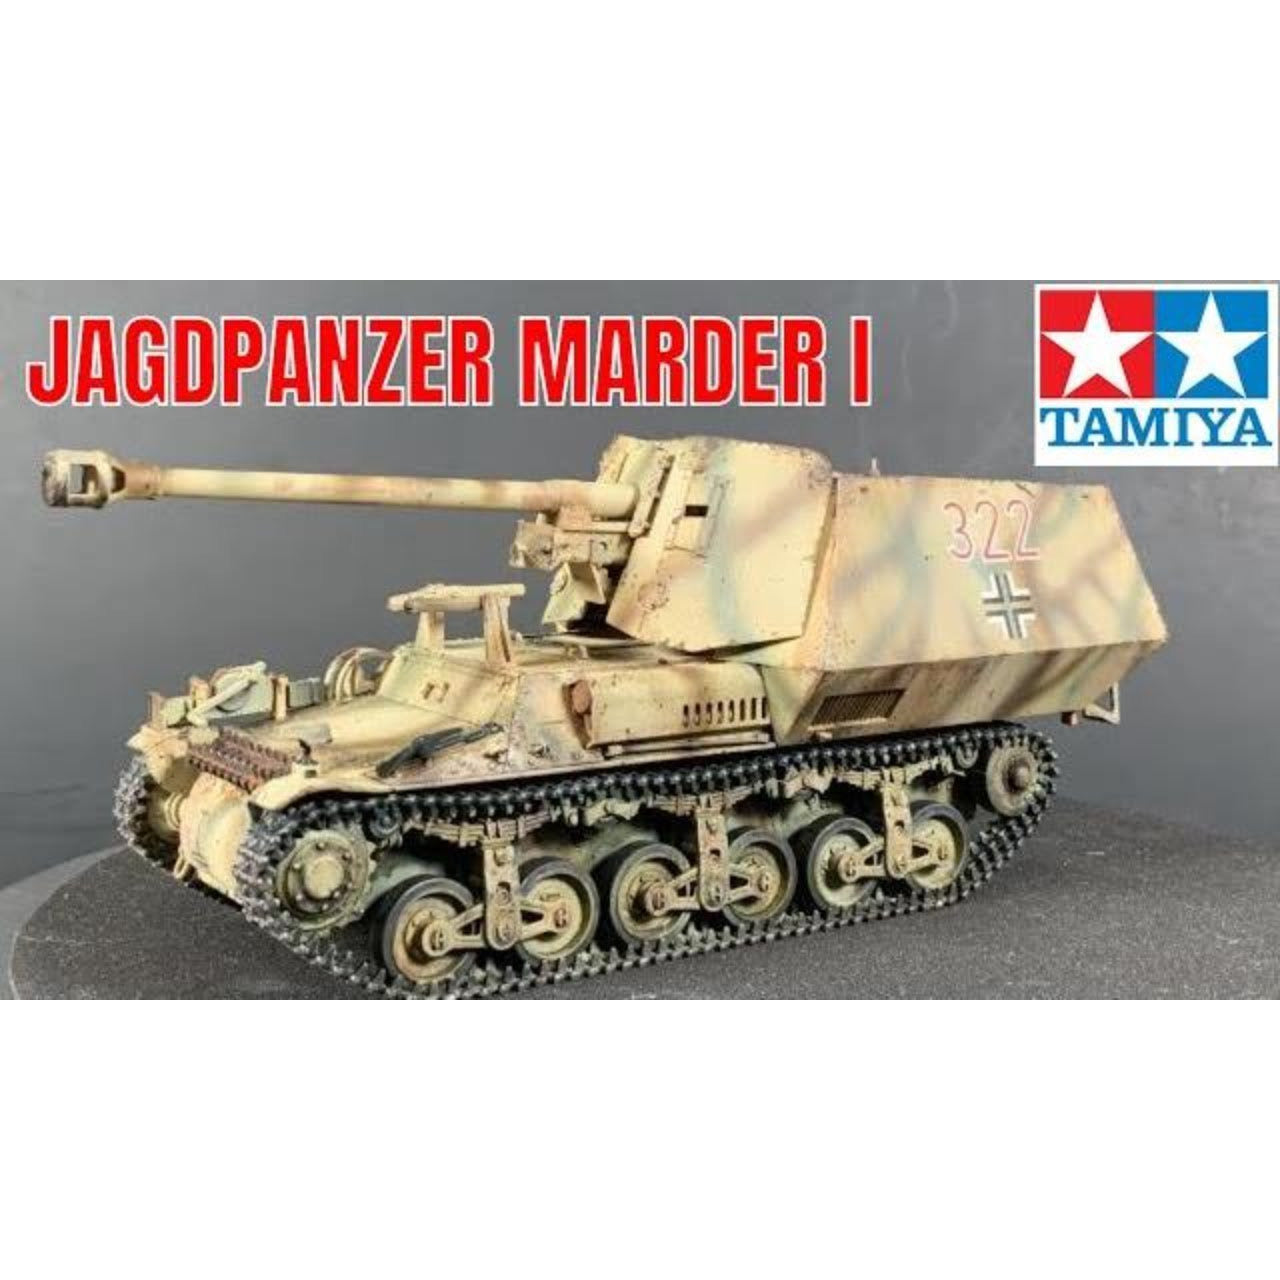 Jagdpanzer Marder I (Sd.Kfz.135) 1/35 #35370 by Tamiya